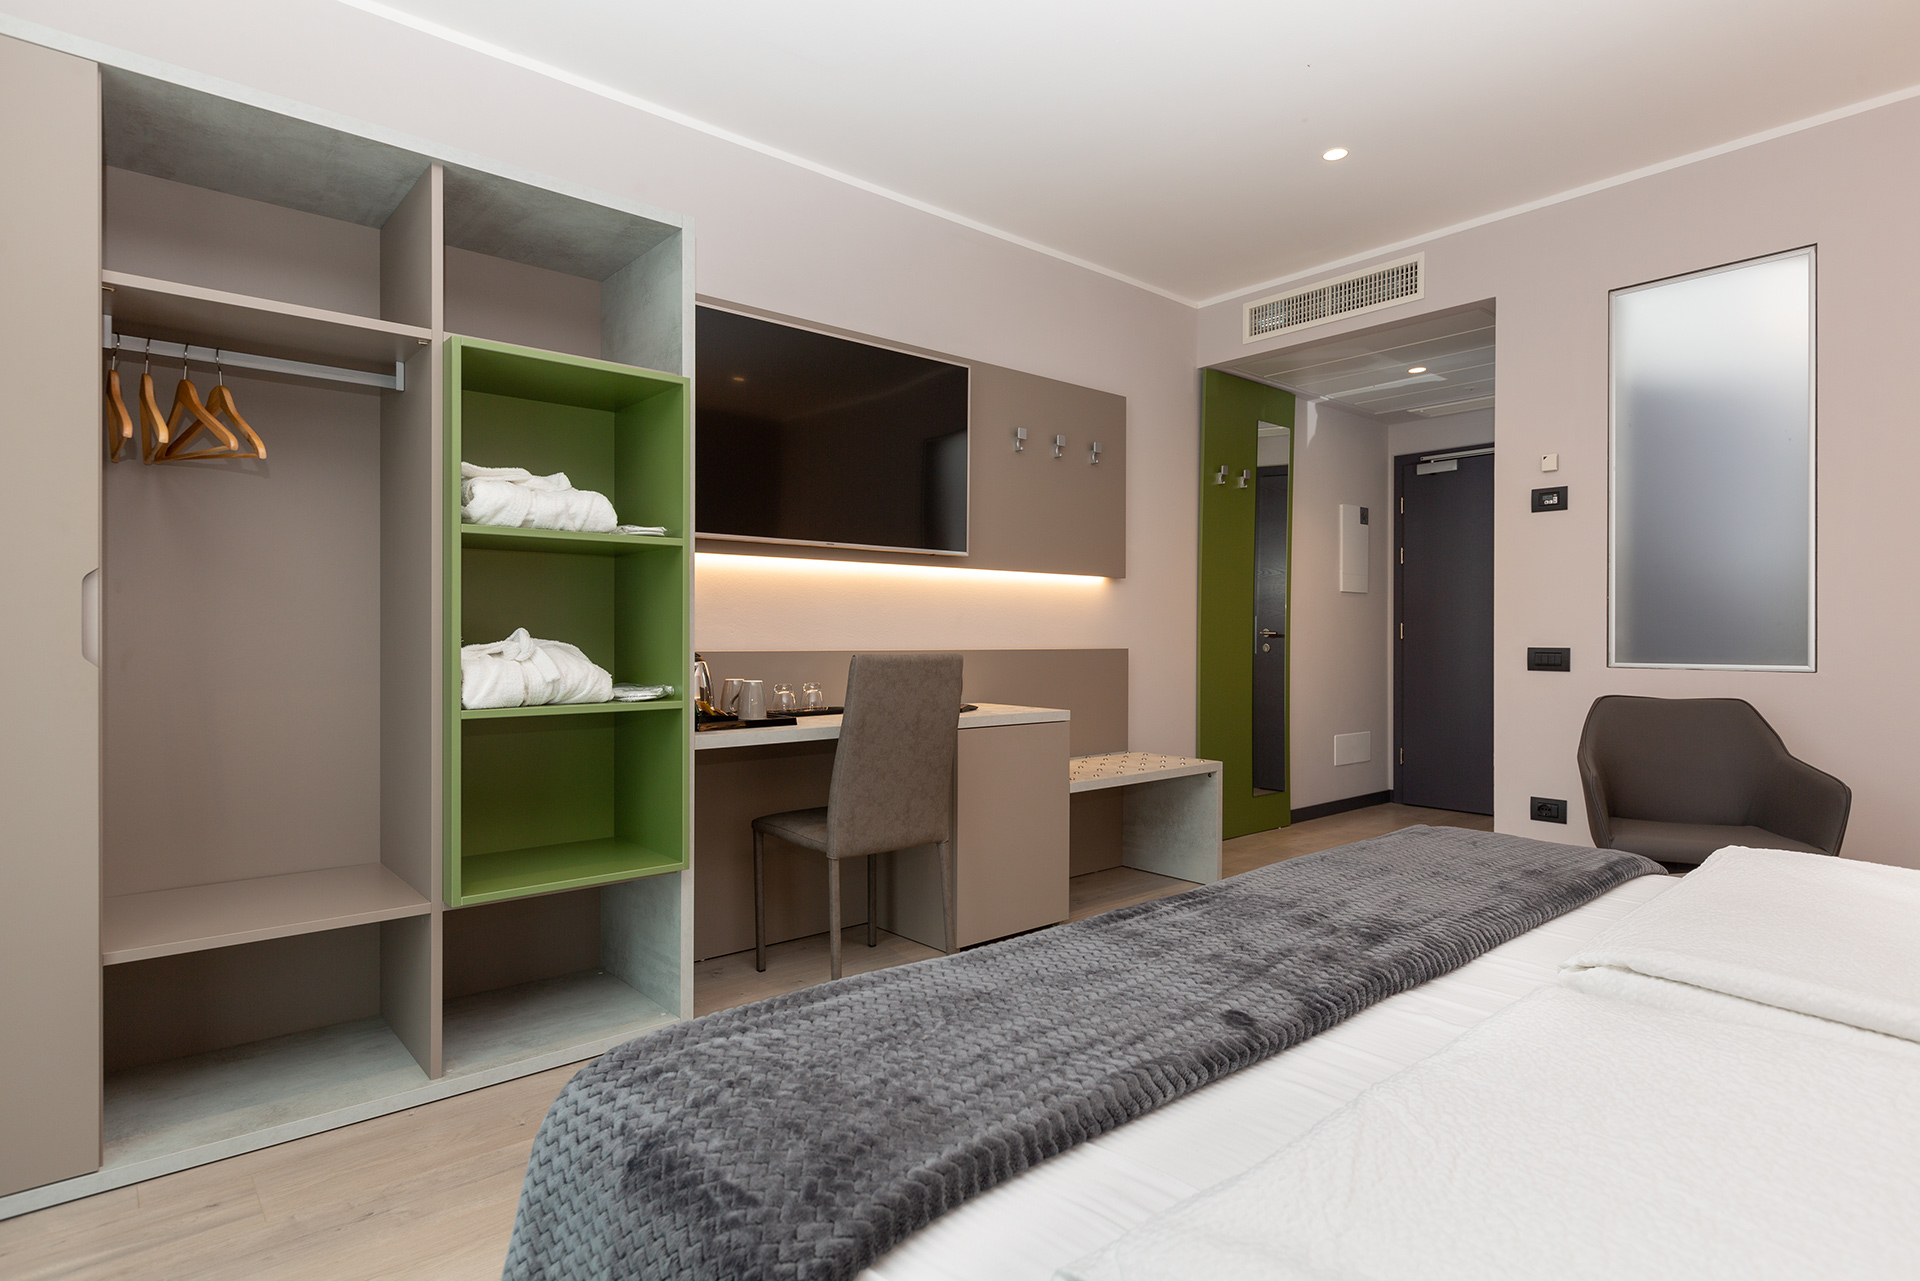 Riva del Garda Hotel Garda Life - Bedroom Full of Life